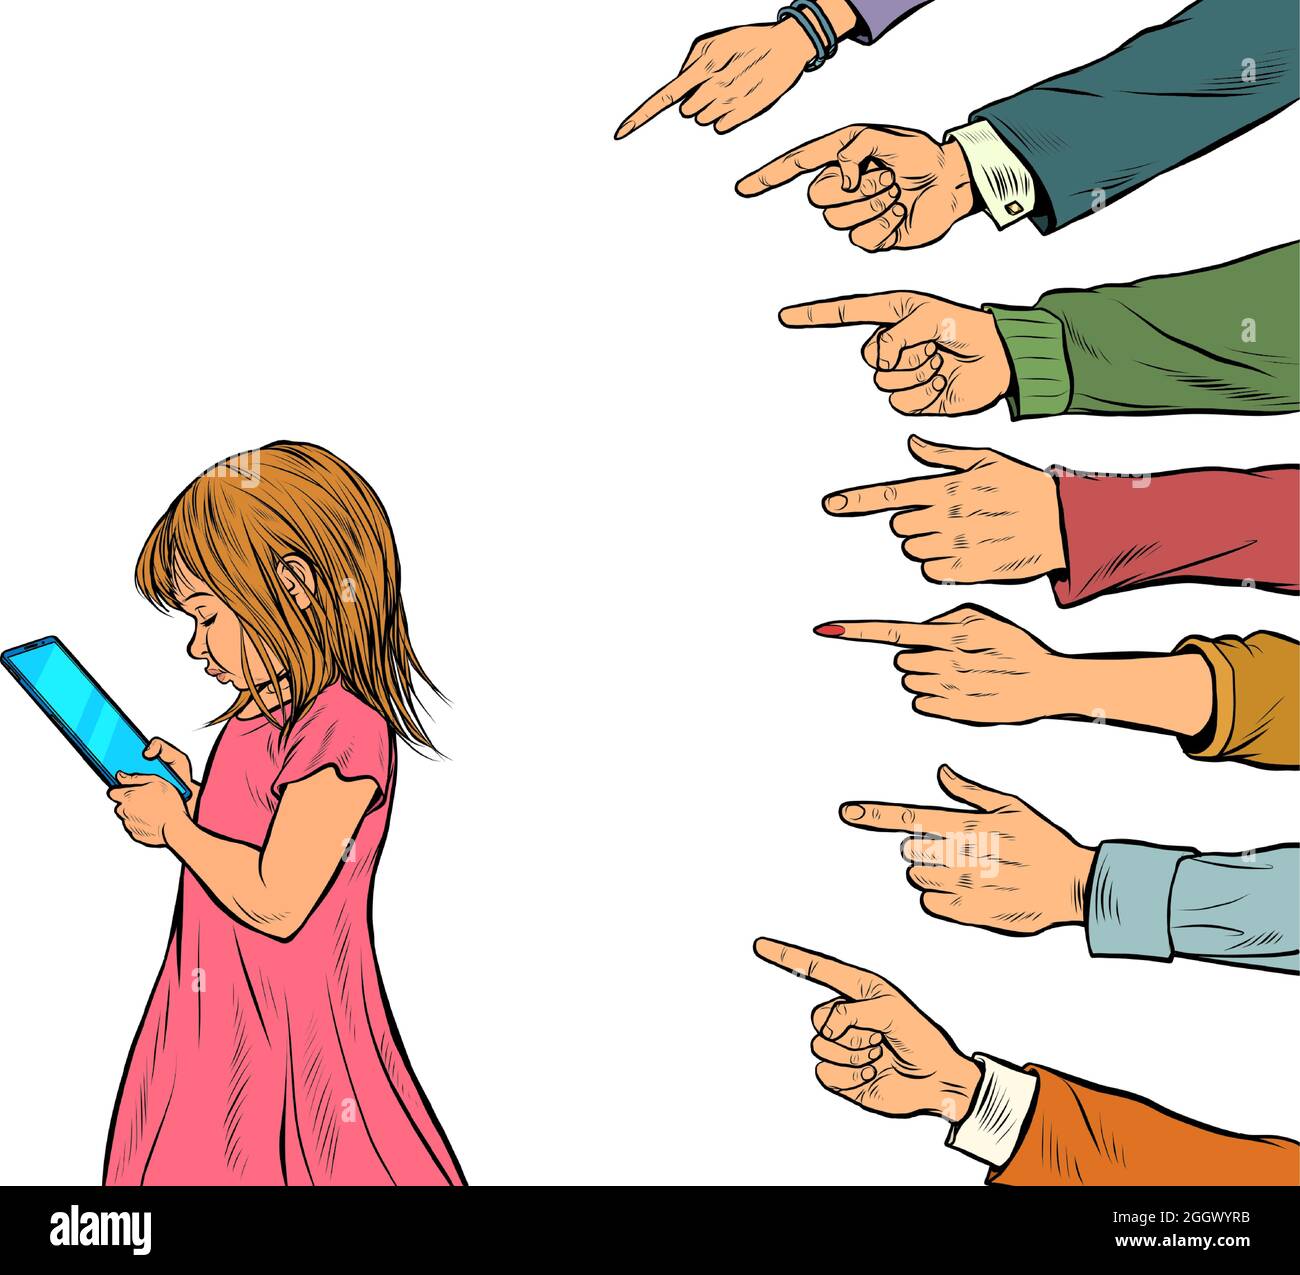 Una bambina usa uno smartphone. Gli adulti discutono della passione dei giovani. Conflitto generazionale isolato su sfondo bianco Illustrazione Vettoriale